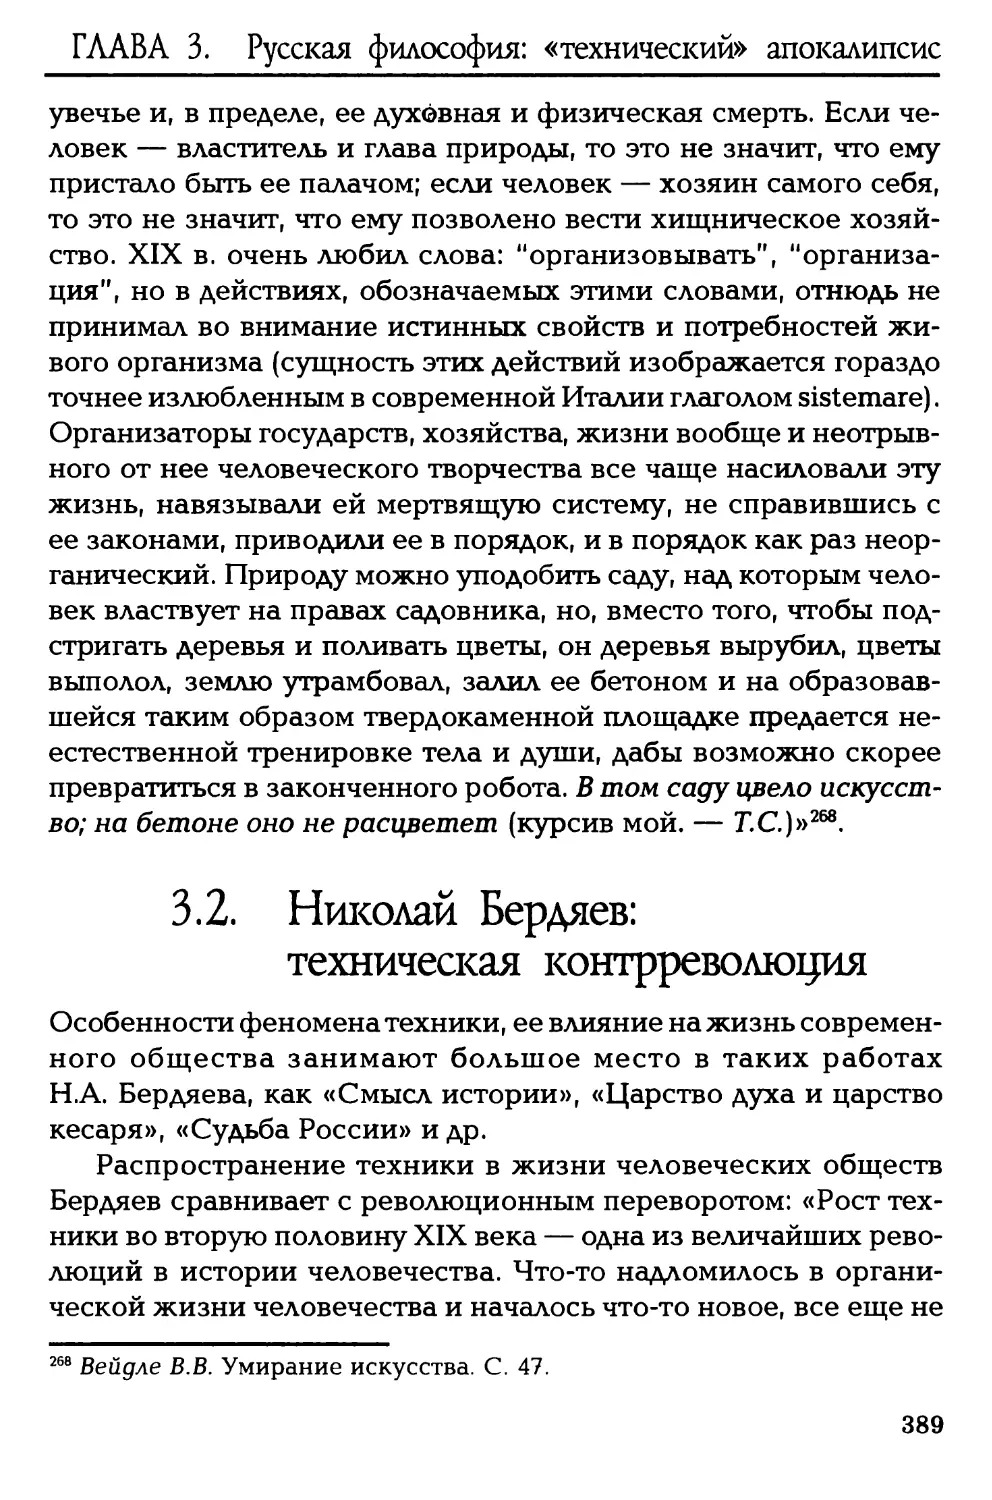 3.2. Николай Бердяев: техническая контрреволюция